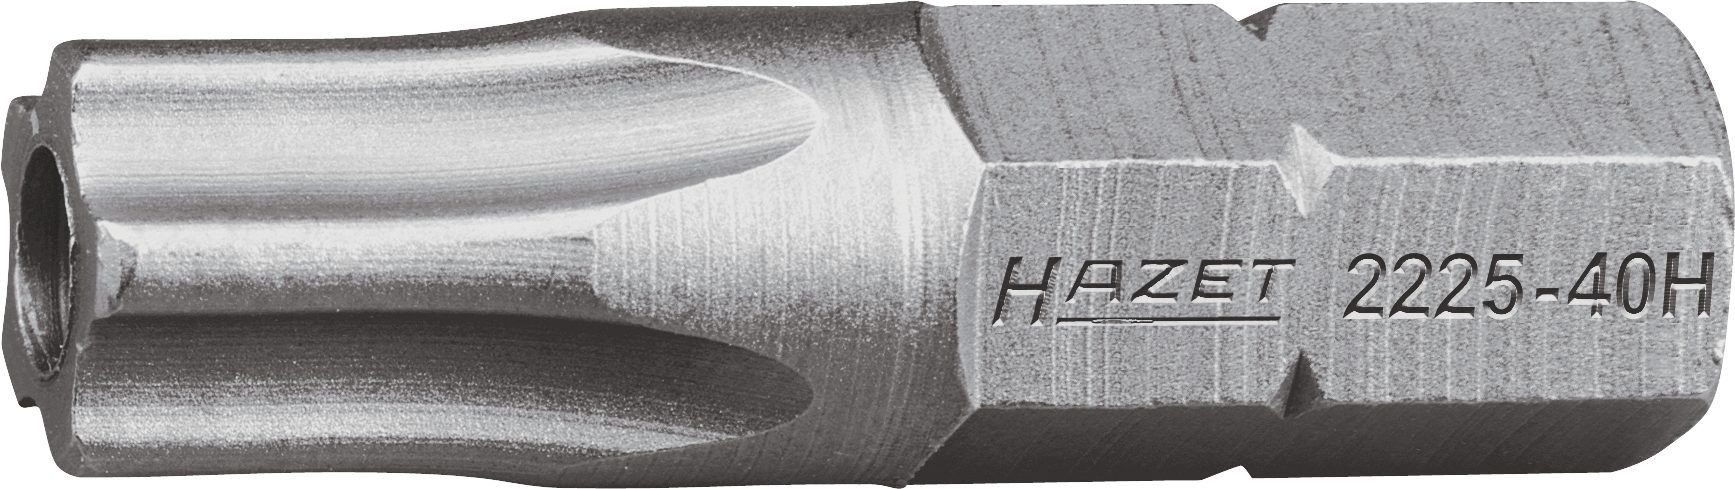 HAZET Bit-Set Hazet 5-Stern-Schraubendr.-Einsatz (Bit), 2225-10H